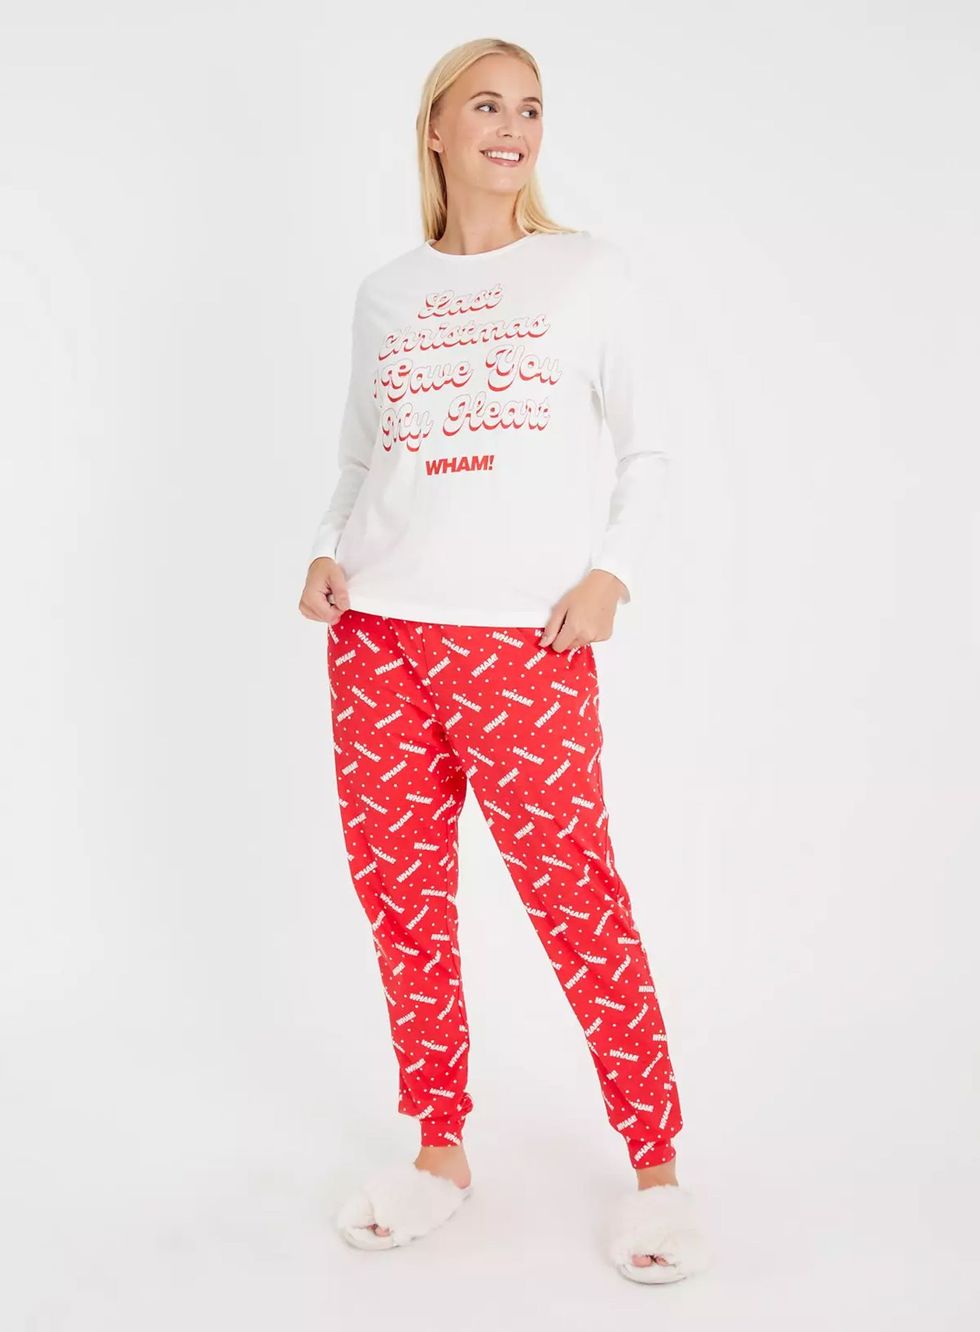 Wham Slogan Red Christmas Pyjamas